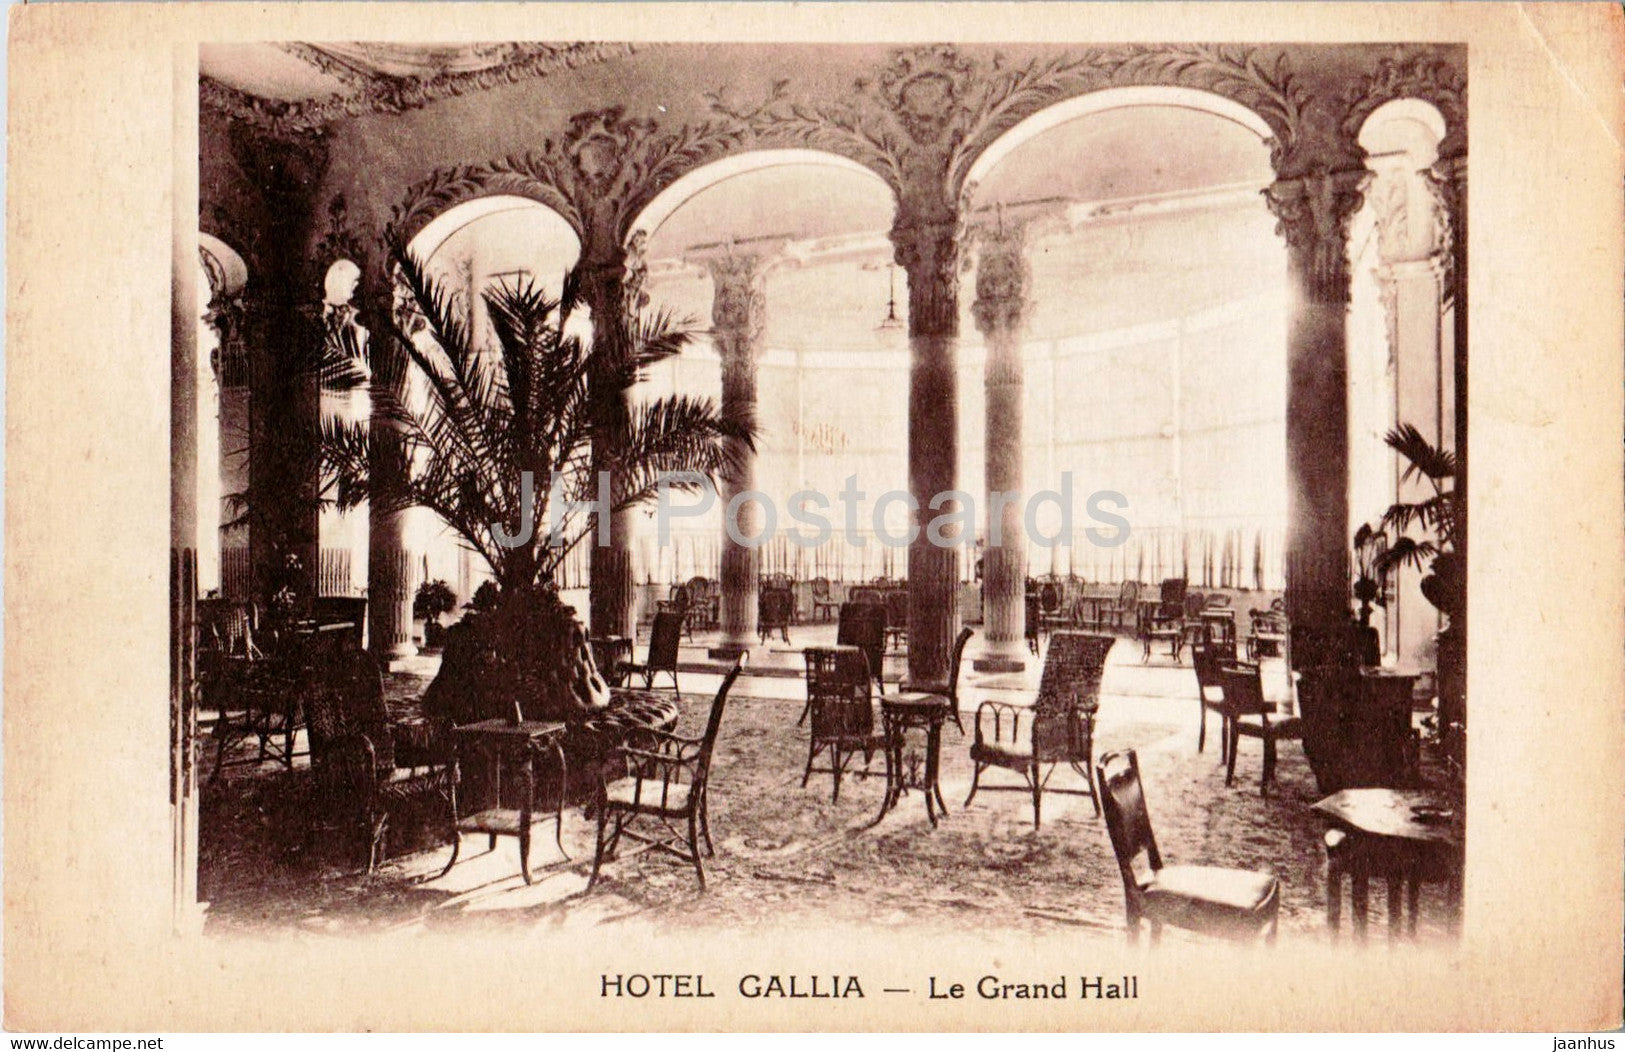 Cannes - Hotel Gallia - Le Grand Hall - old postcard - France - unused - JH Postcards